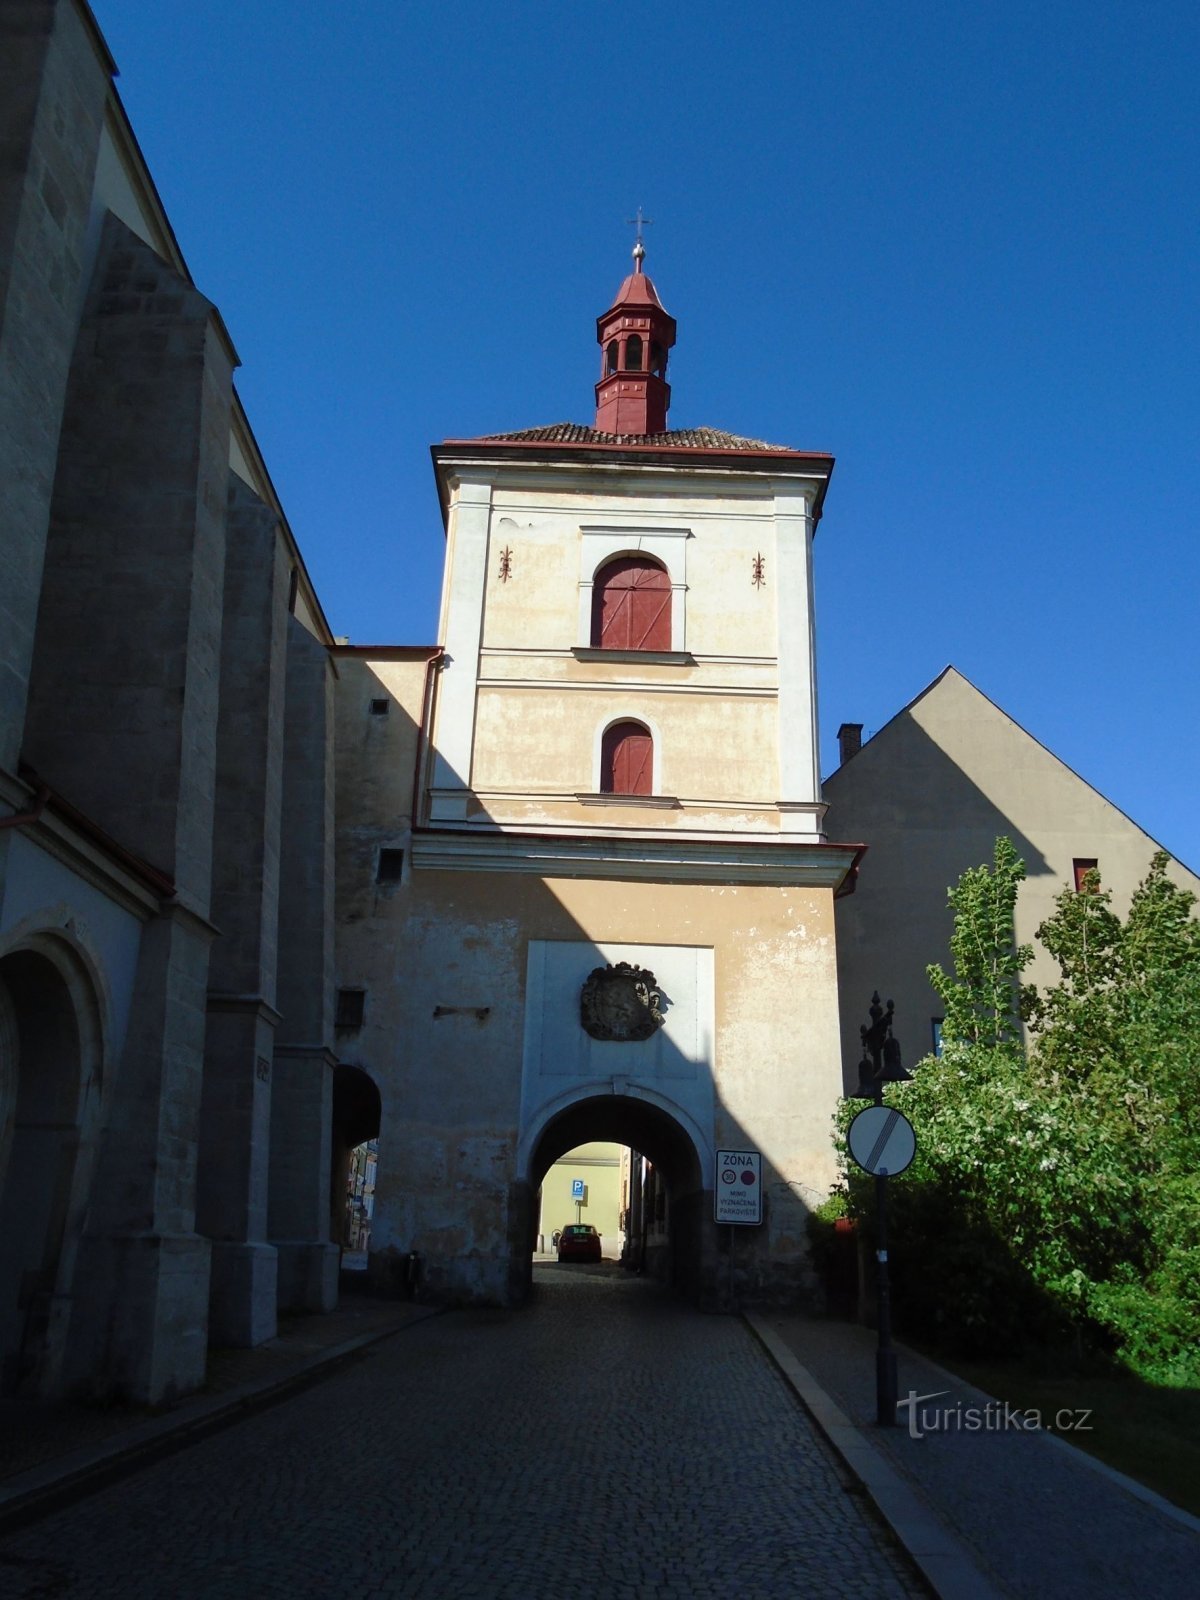 Cổng thành với tháp chuông (Jaroměř, 13.5.2018/XNUMX/XNUMX)